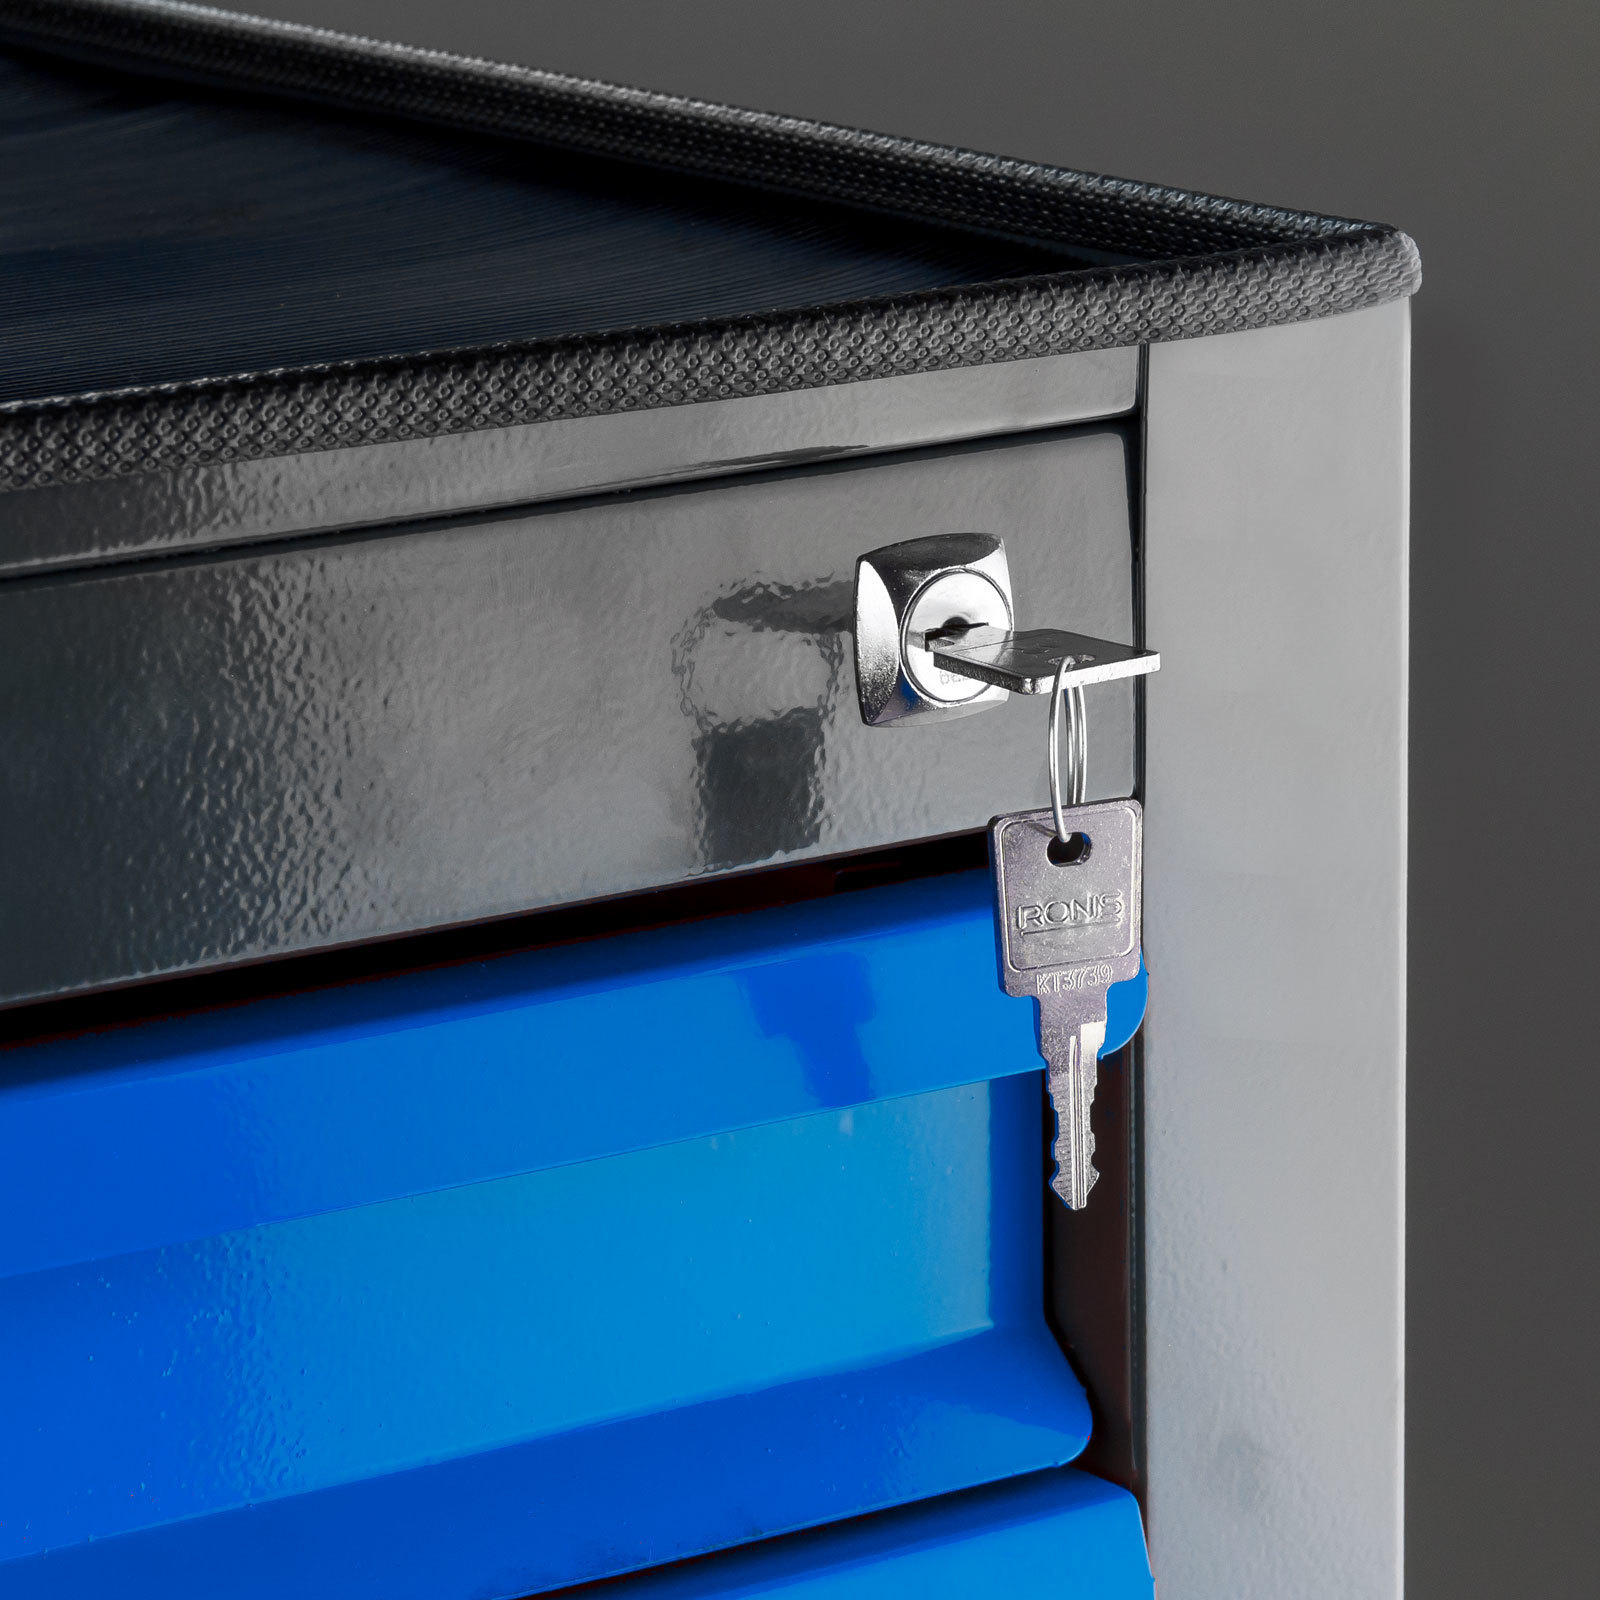 Schubladenschrank Kobra mit 10 Schubladen + Gummiauflage | HxBxT 90x71x55cm | Anthrazitgrau/Blau